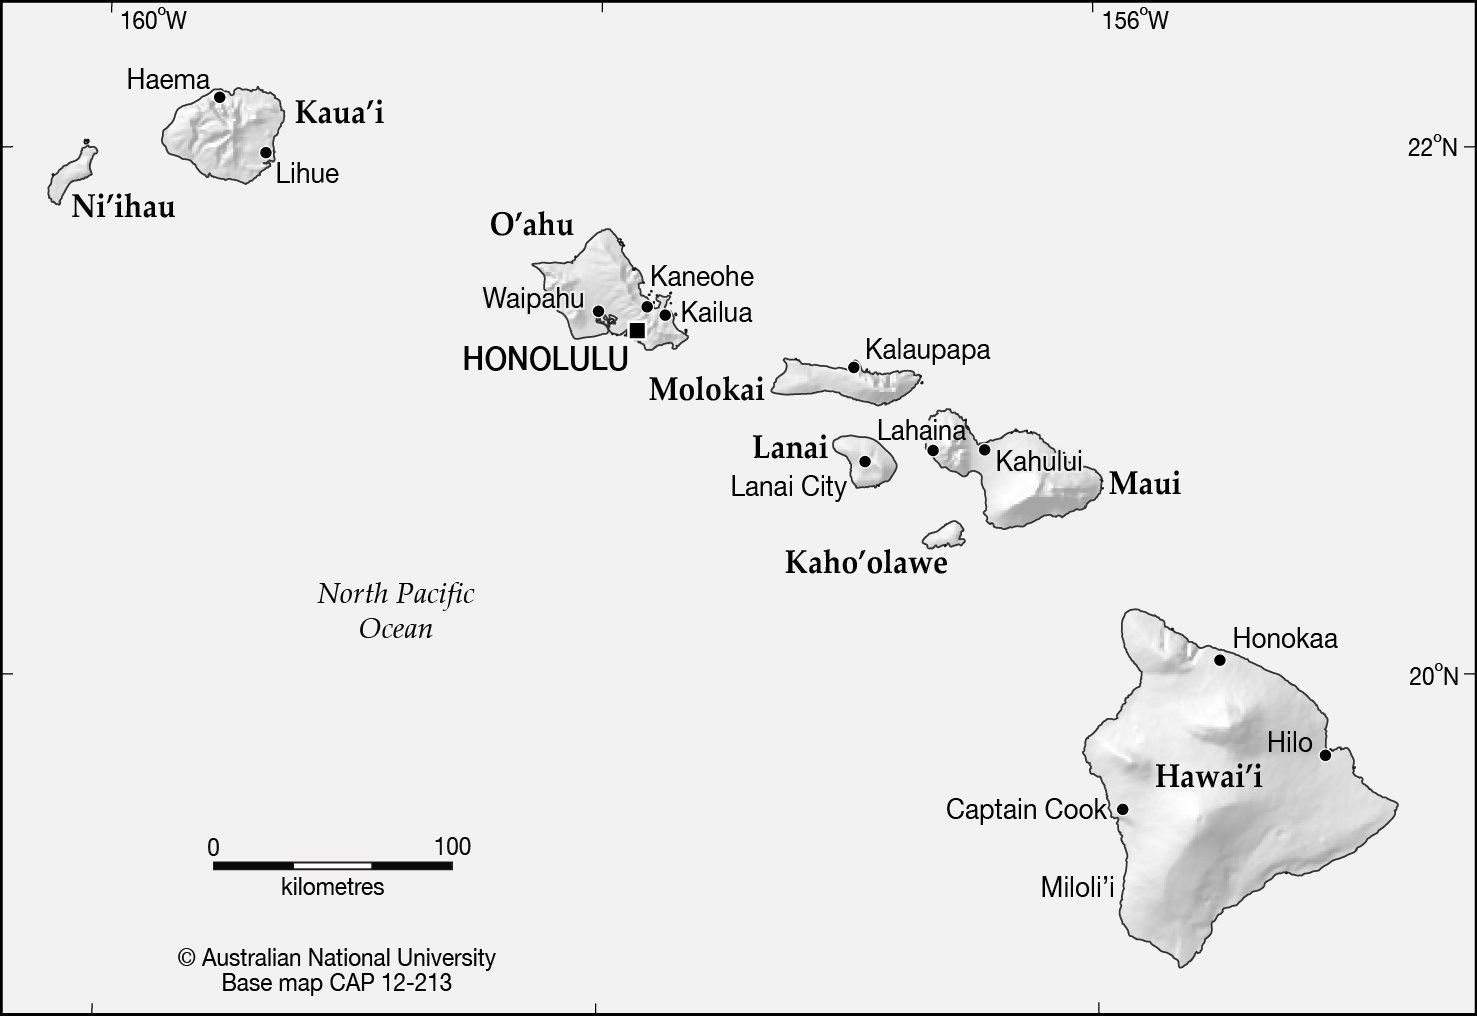 Hawaii base.